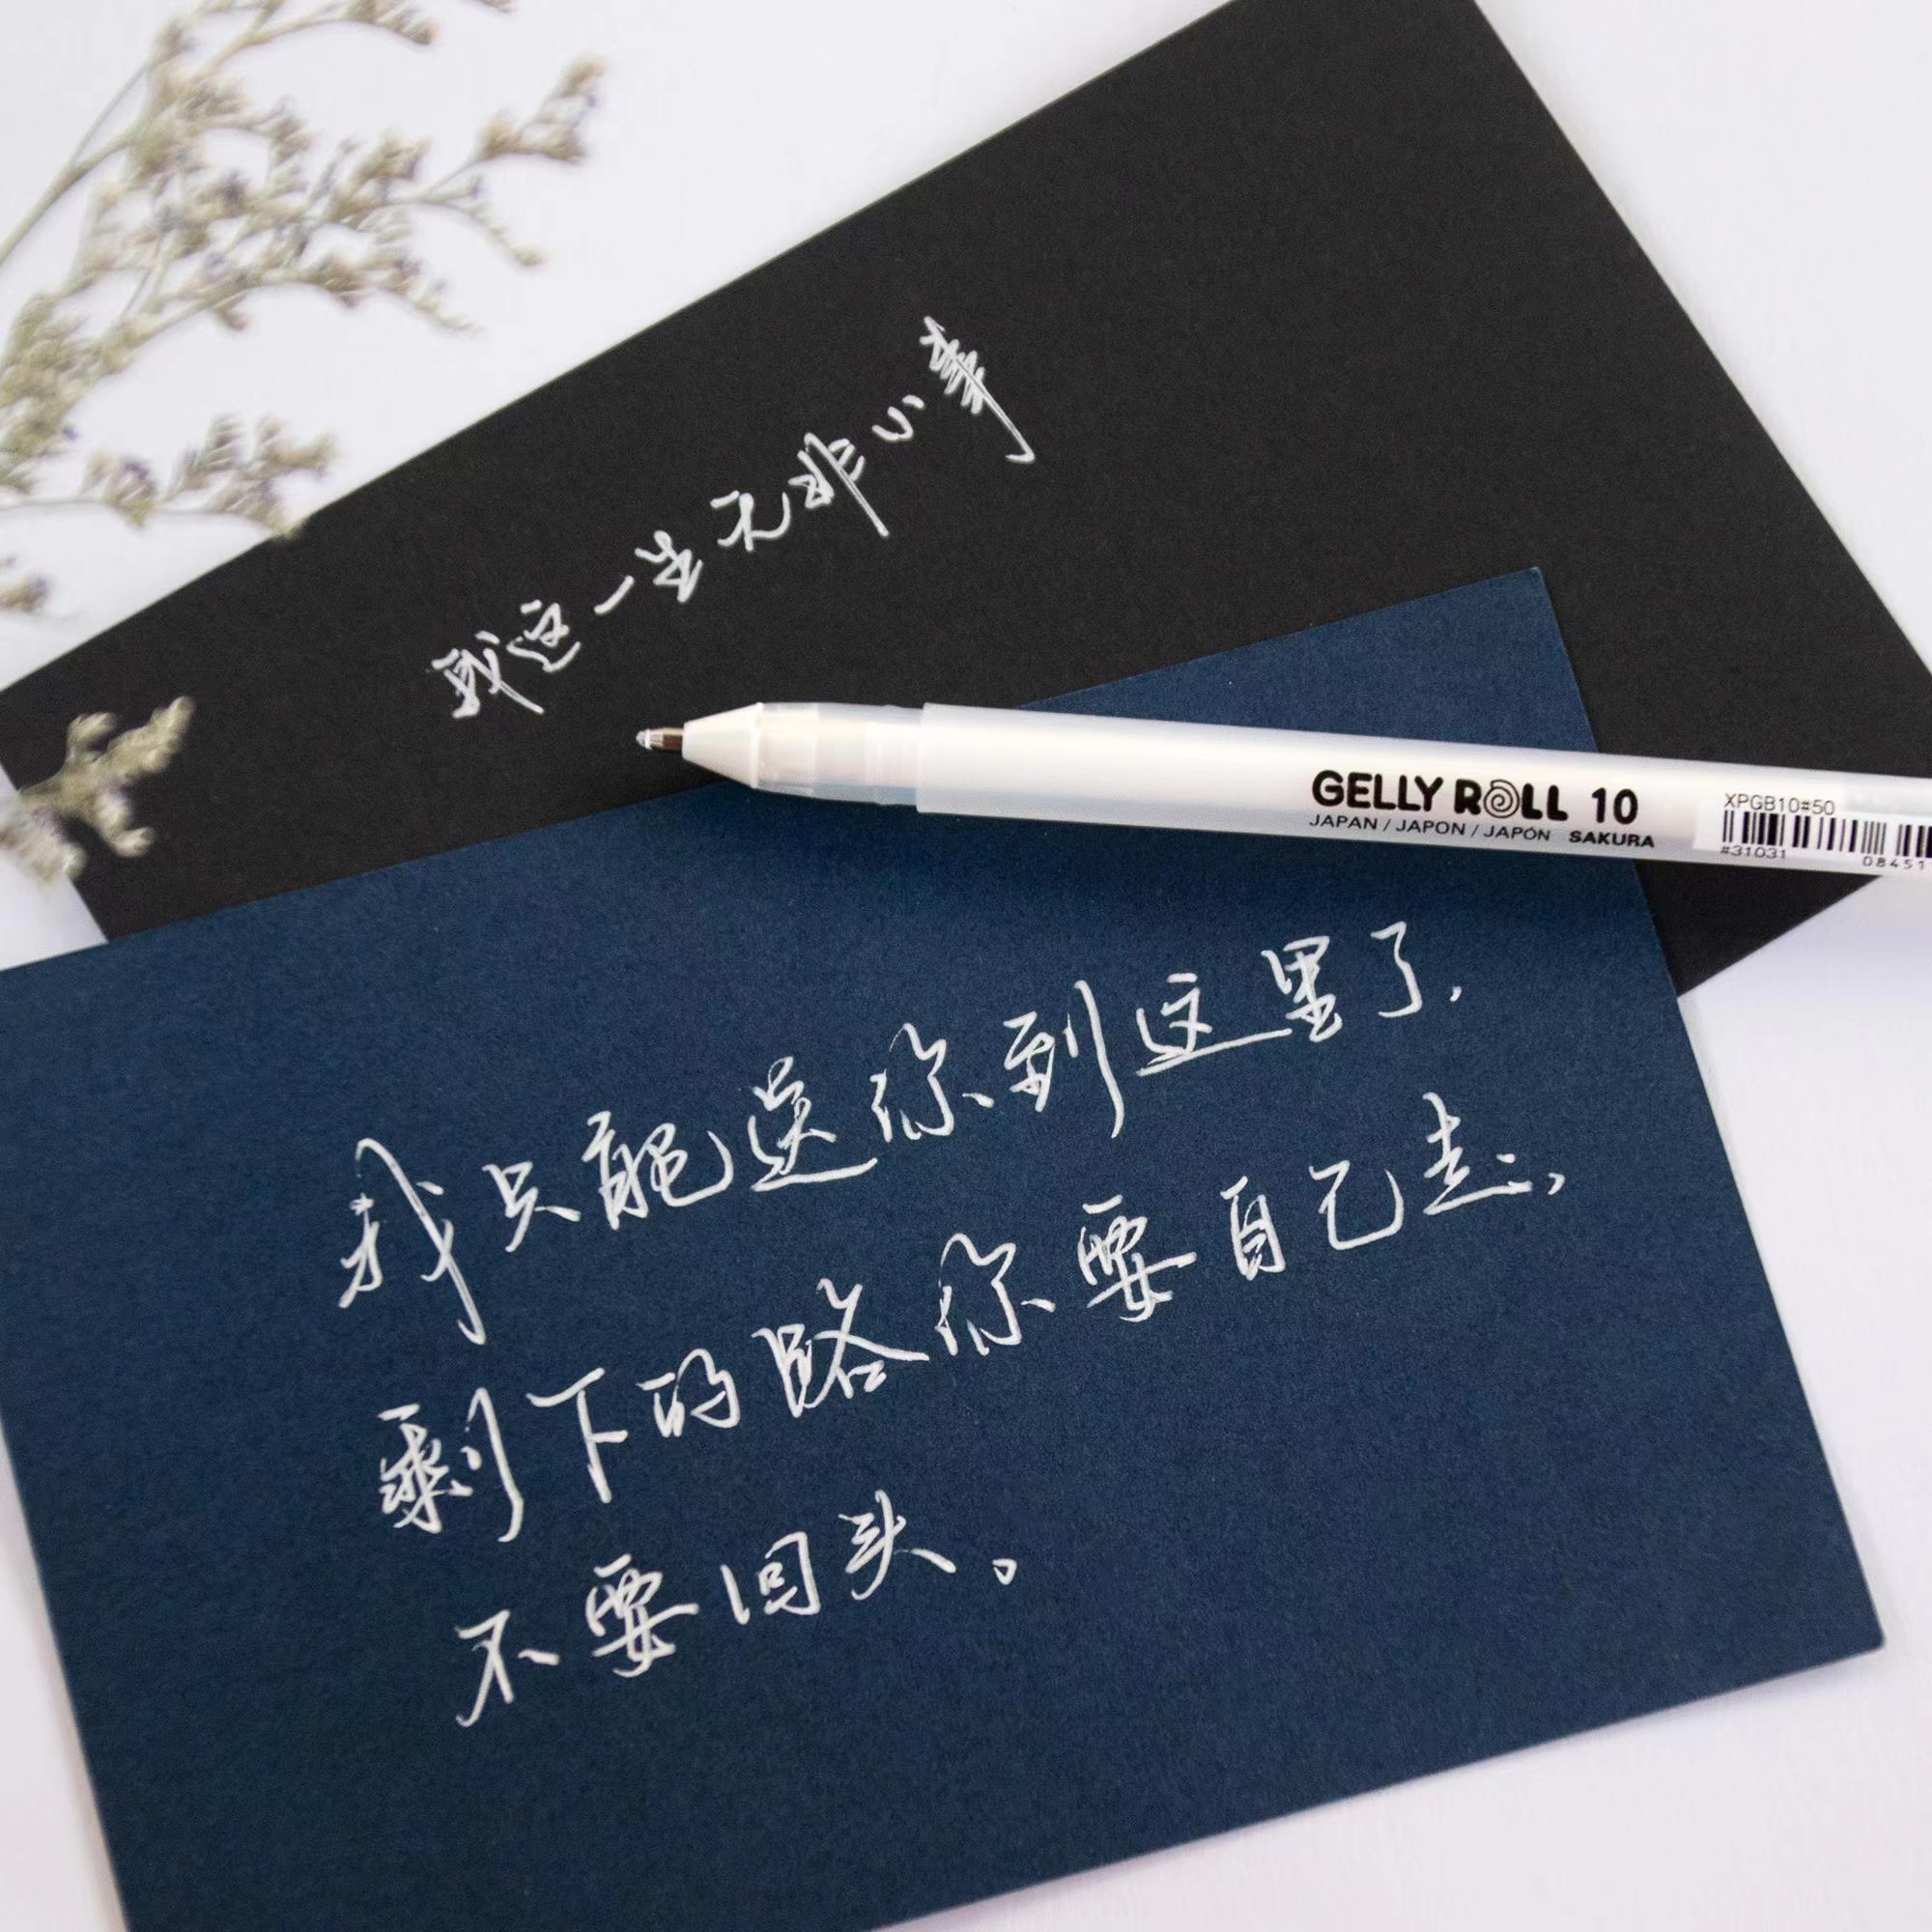 一起练字硬笔书法比赛专用白色中性笔日本樱花高光笔0.5/0.8/1.0